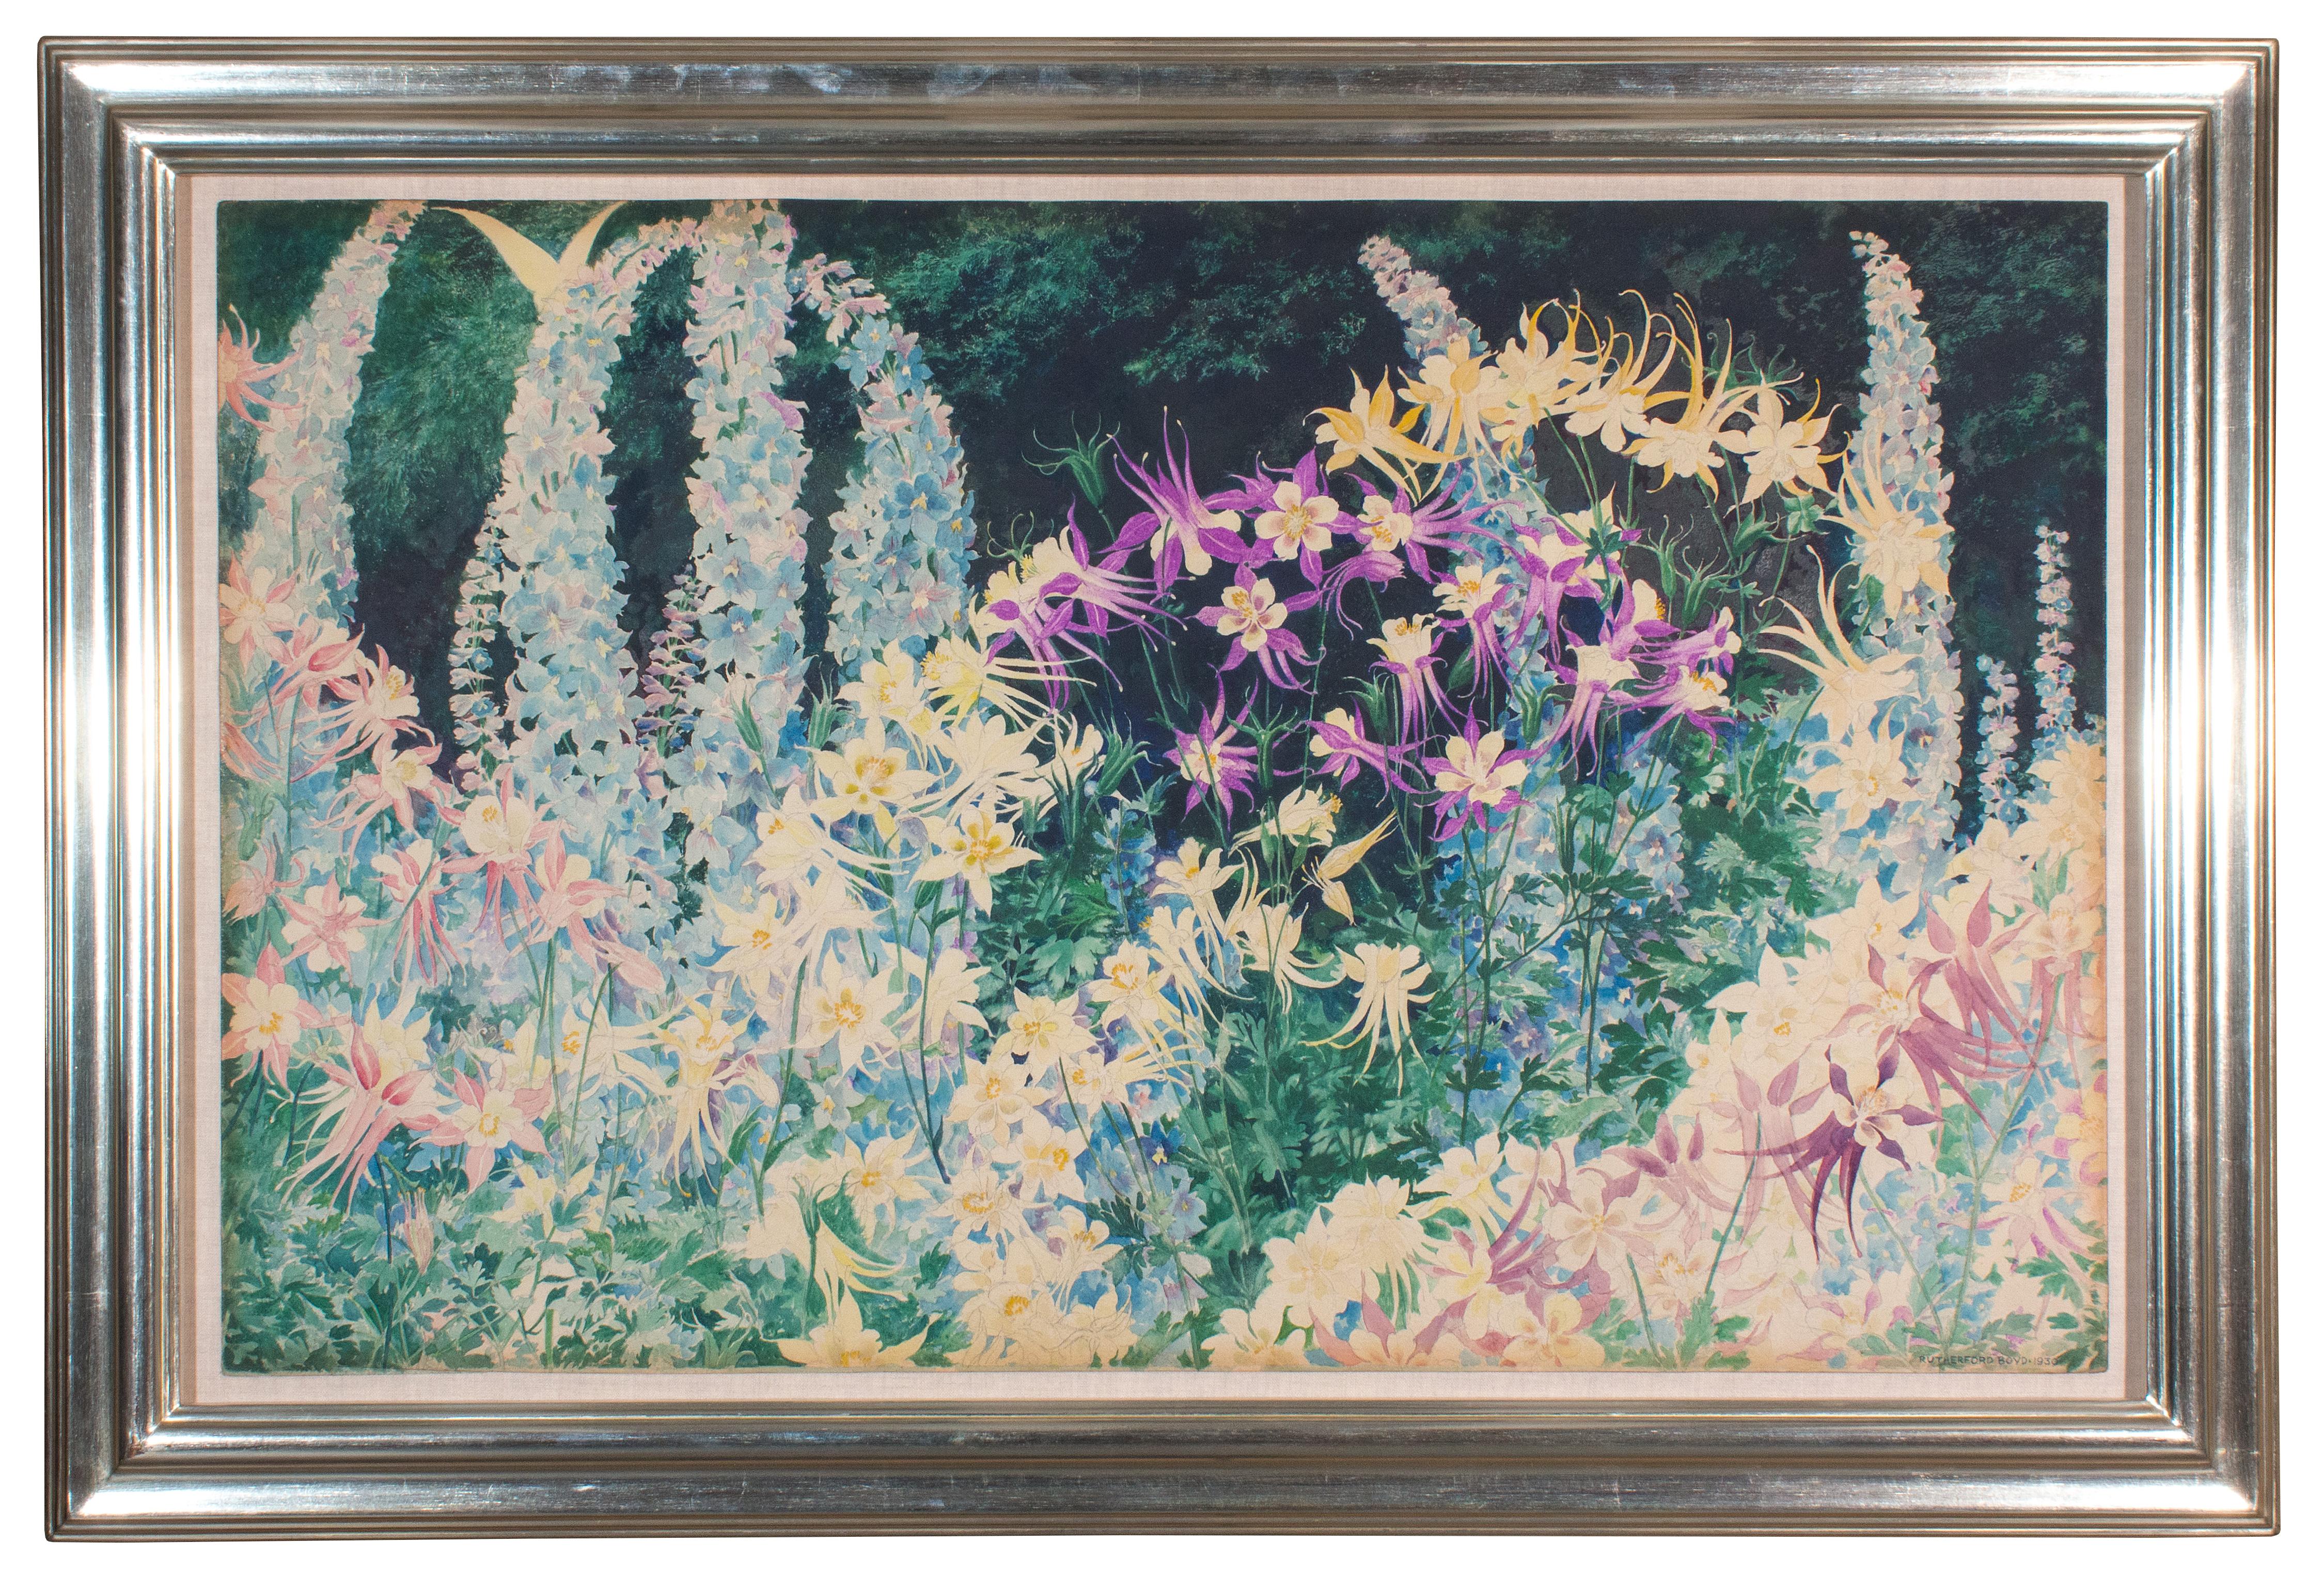 Blumen: Aquilegia und Delphinium – amerikanisches impressionistisches Aquarell auf Papier